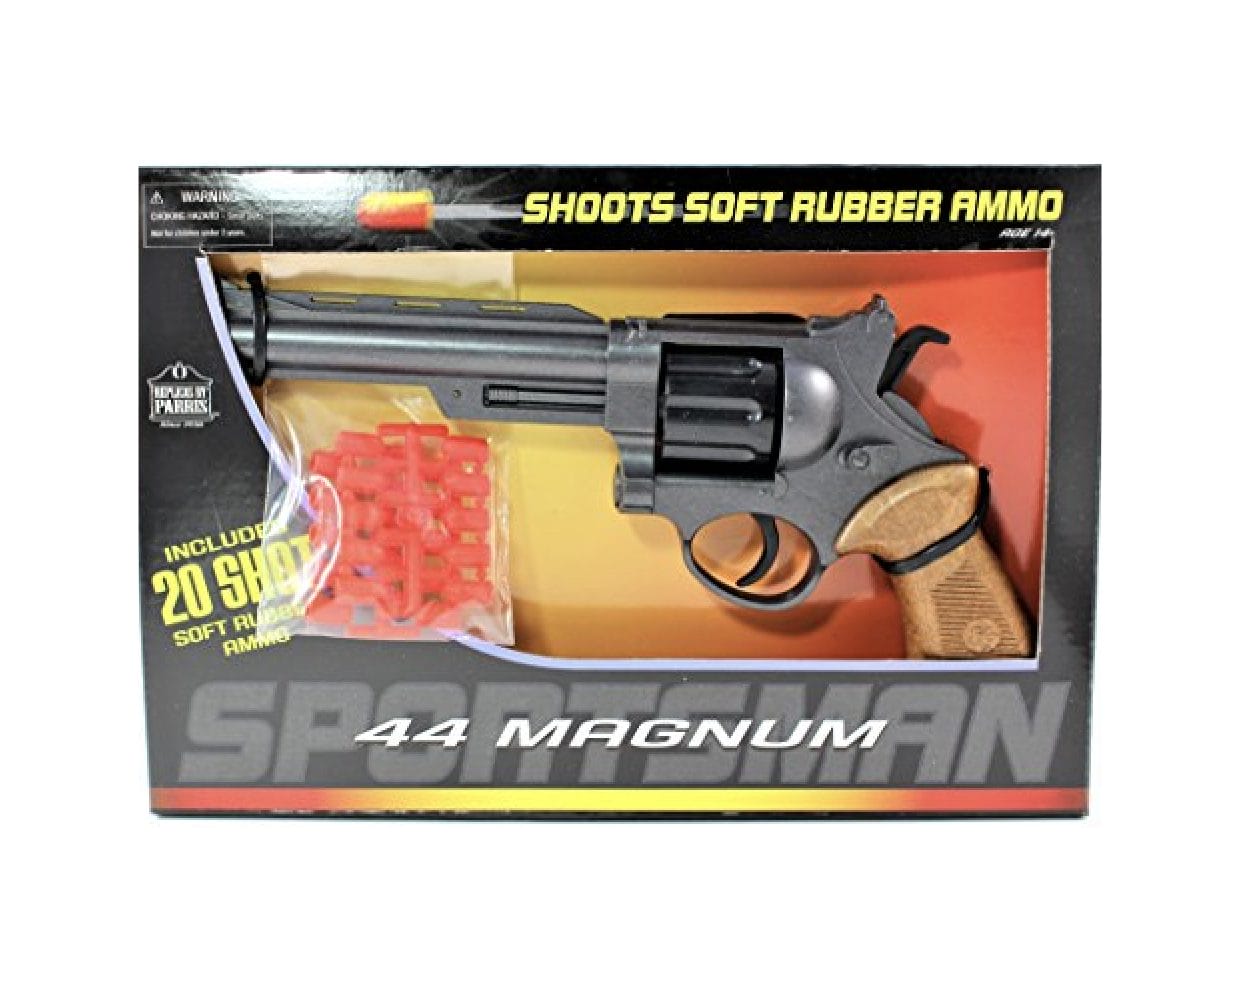 44 Magnum Sportsman Air Soft Gun